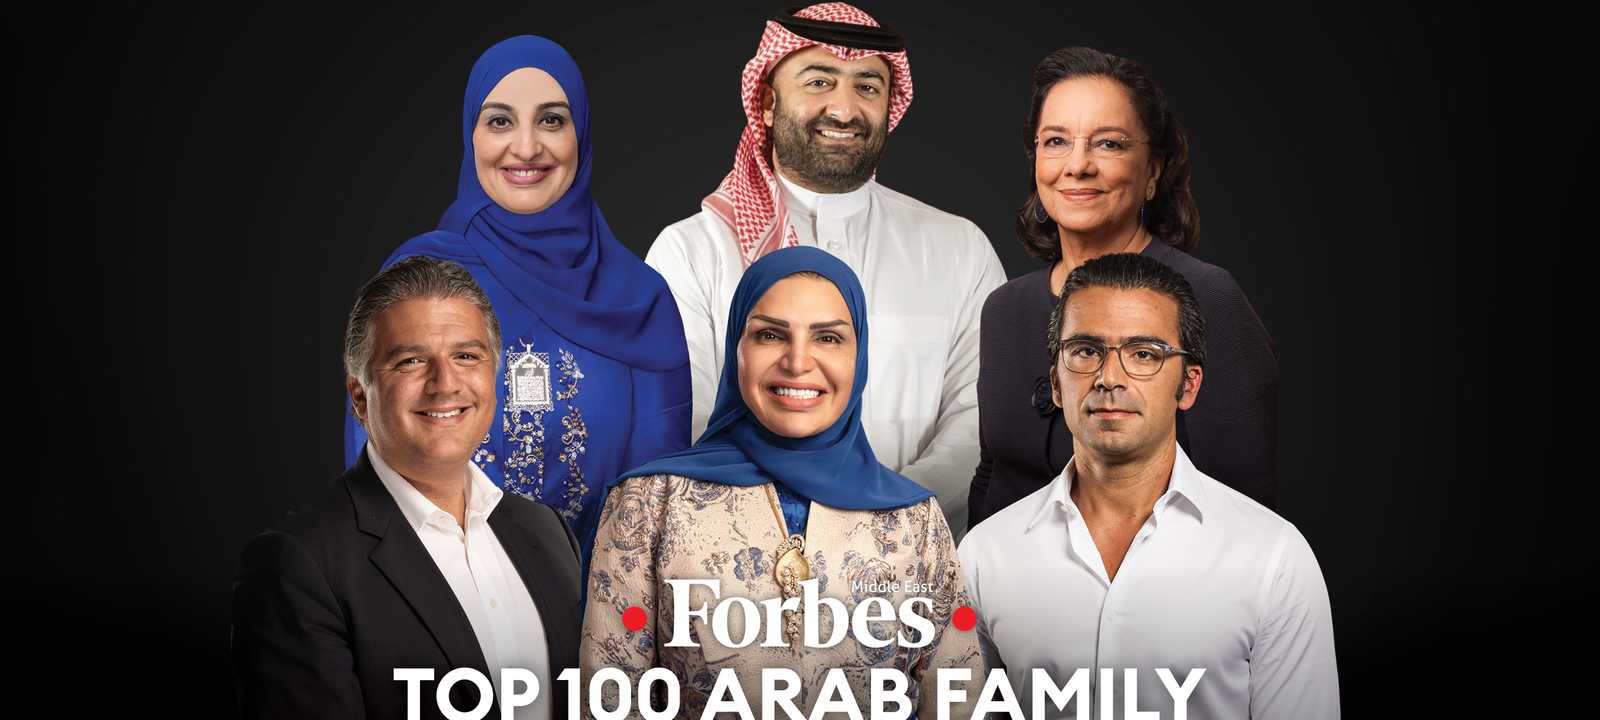 قائمة فوربس الشرق الأوسط لأقوى 100 شركة عائلية عربية